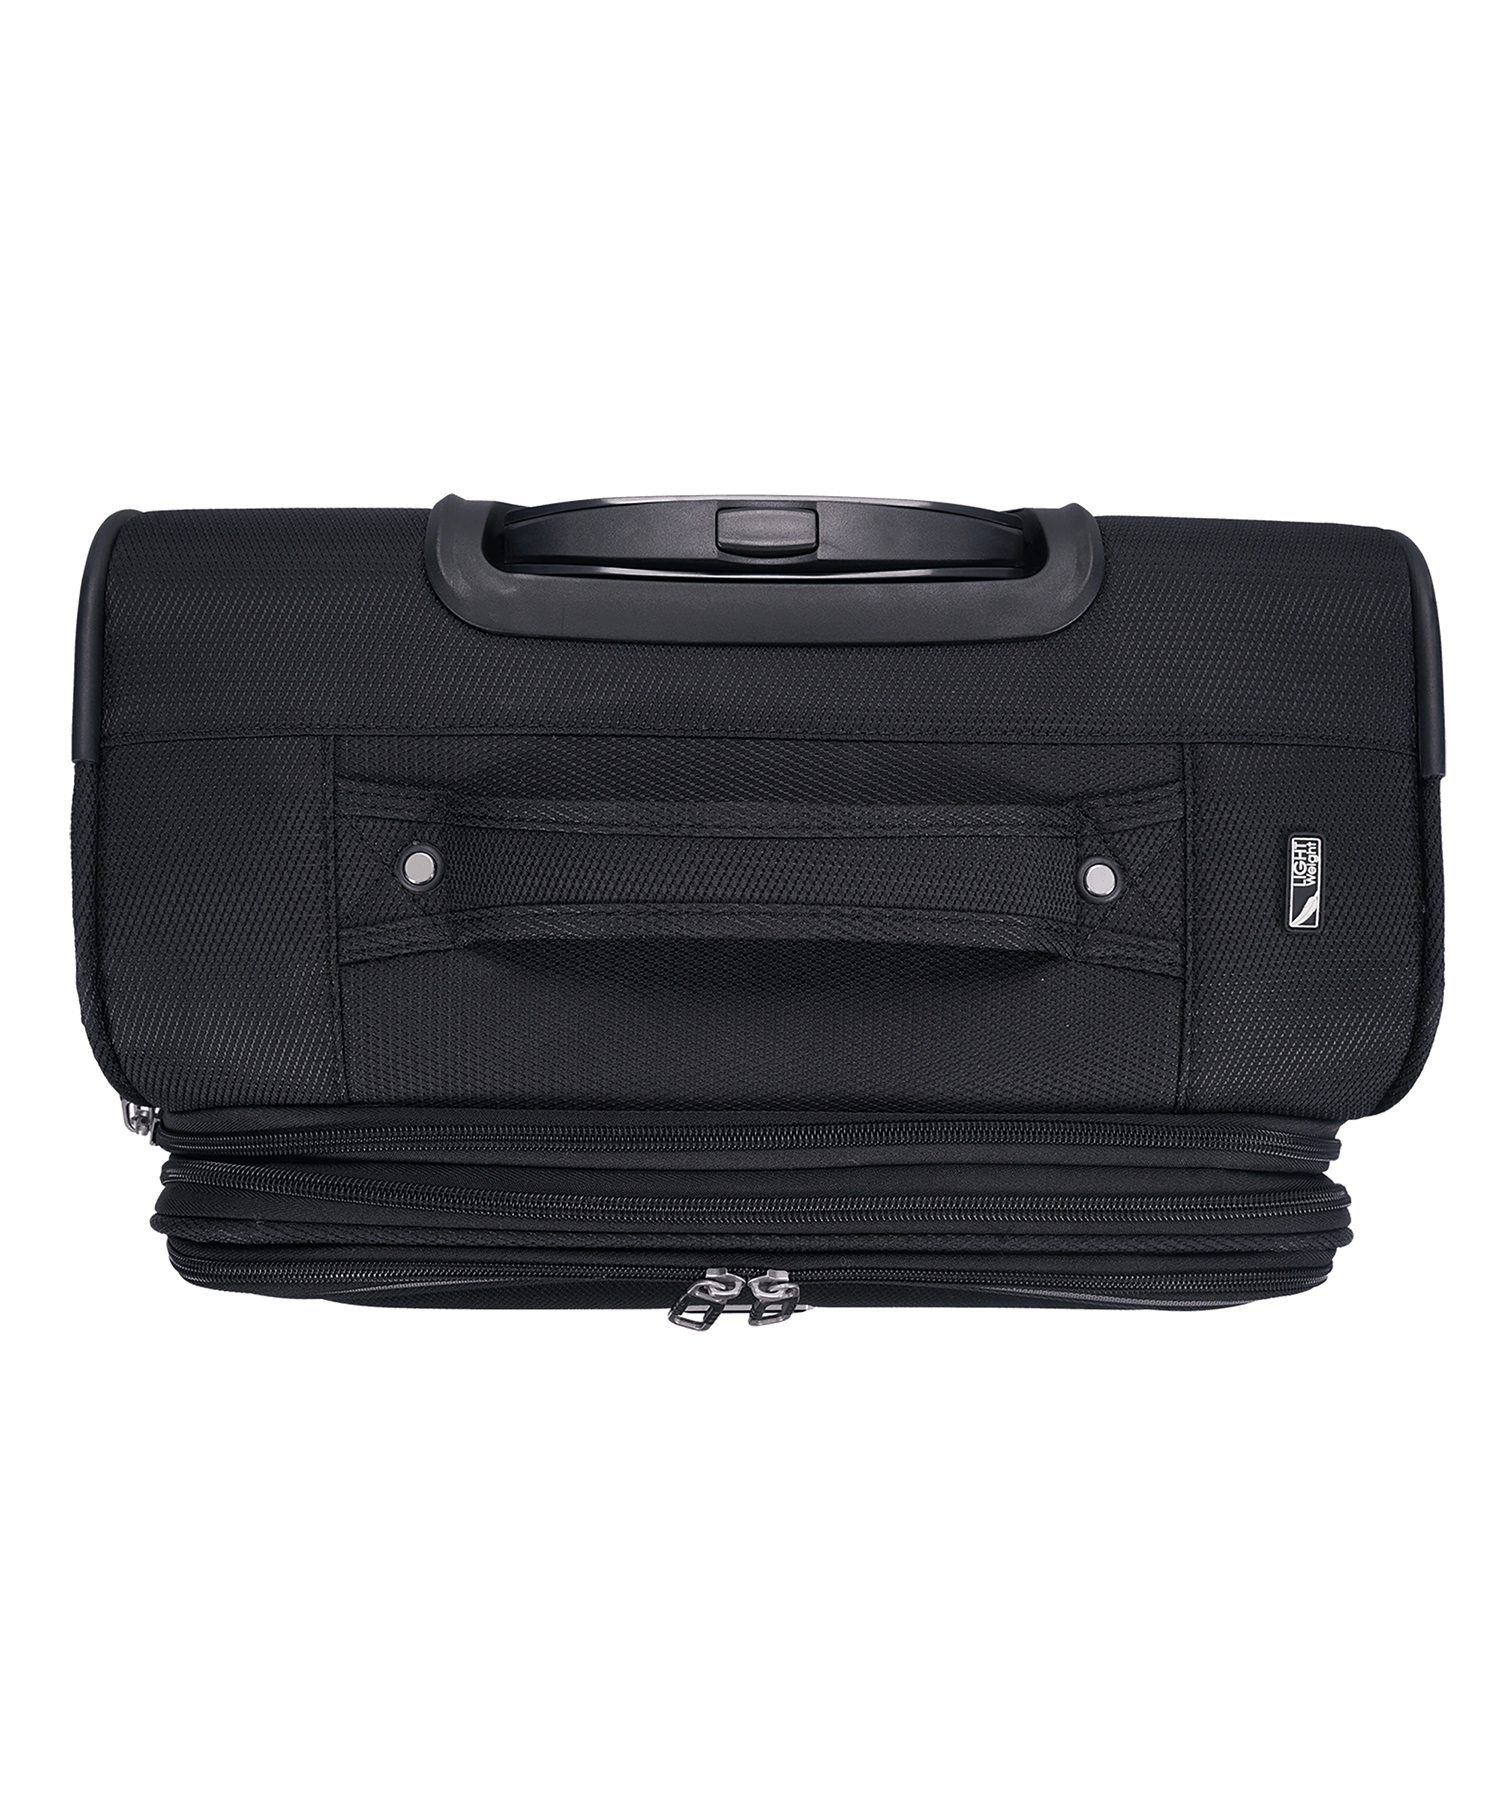 San Michelle Travel Pro 68cm Suitcase - San Michelle Bags suitcase nz